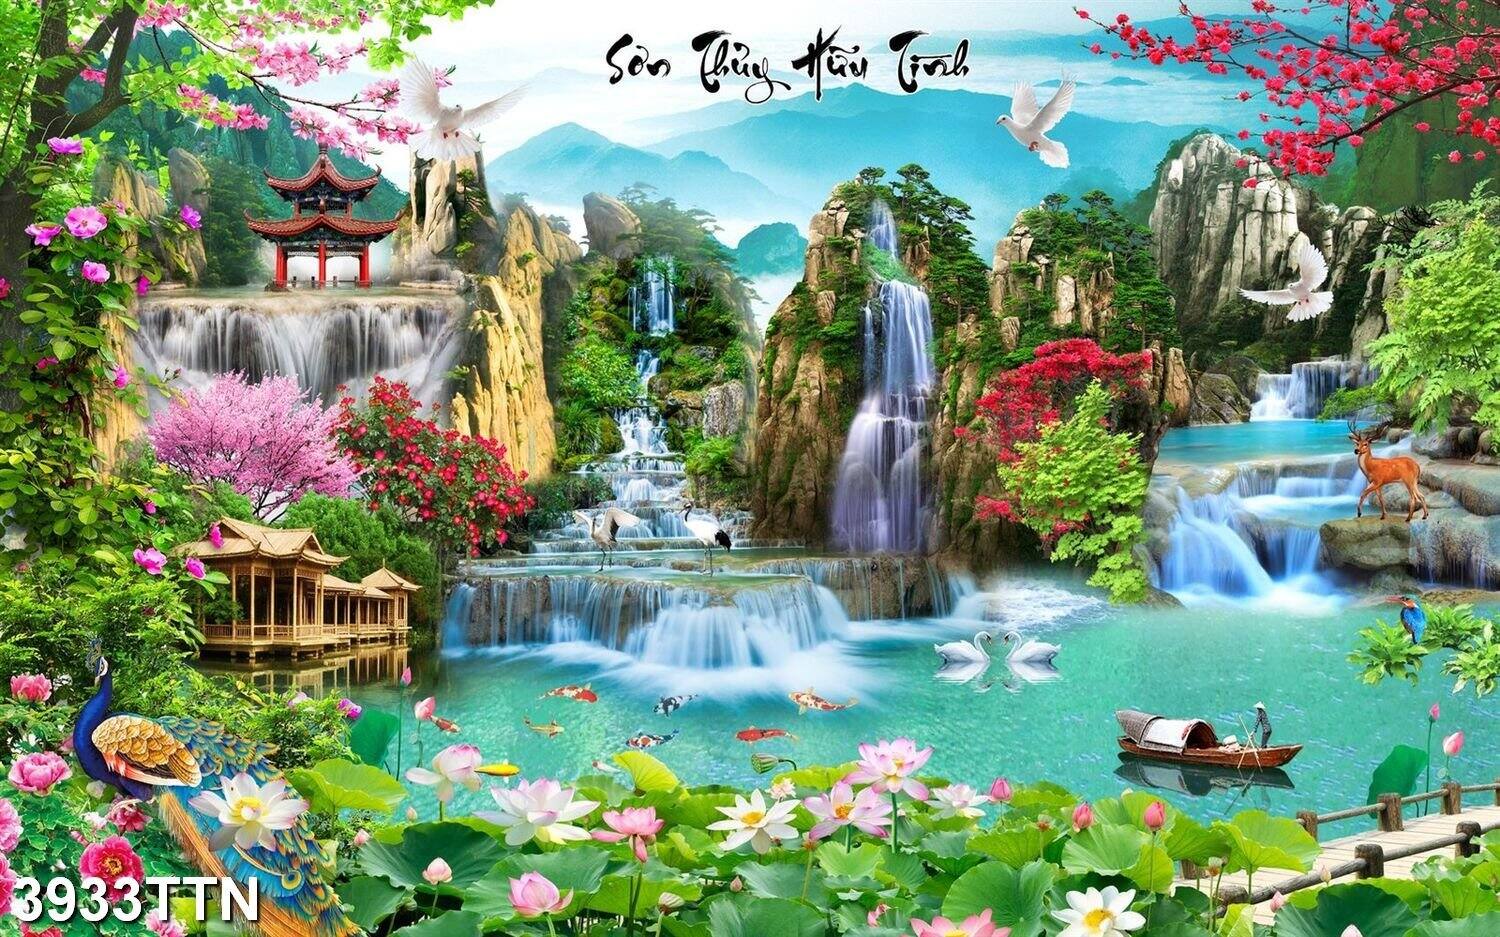 Tranh dán tường 3D Sơn Thủy Hữu Tình 3933TTN - Tranh Phong cảnh thác nước  hòn non bộ - Tranh trang trí phòng khách 